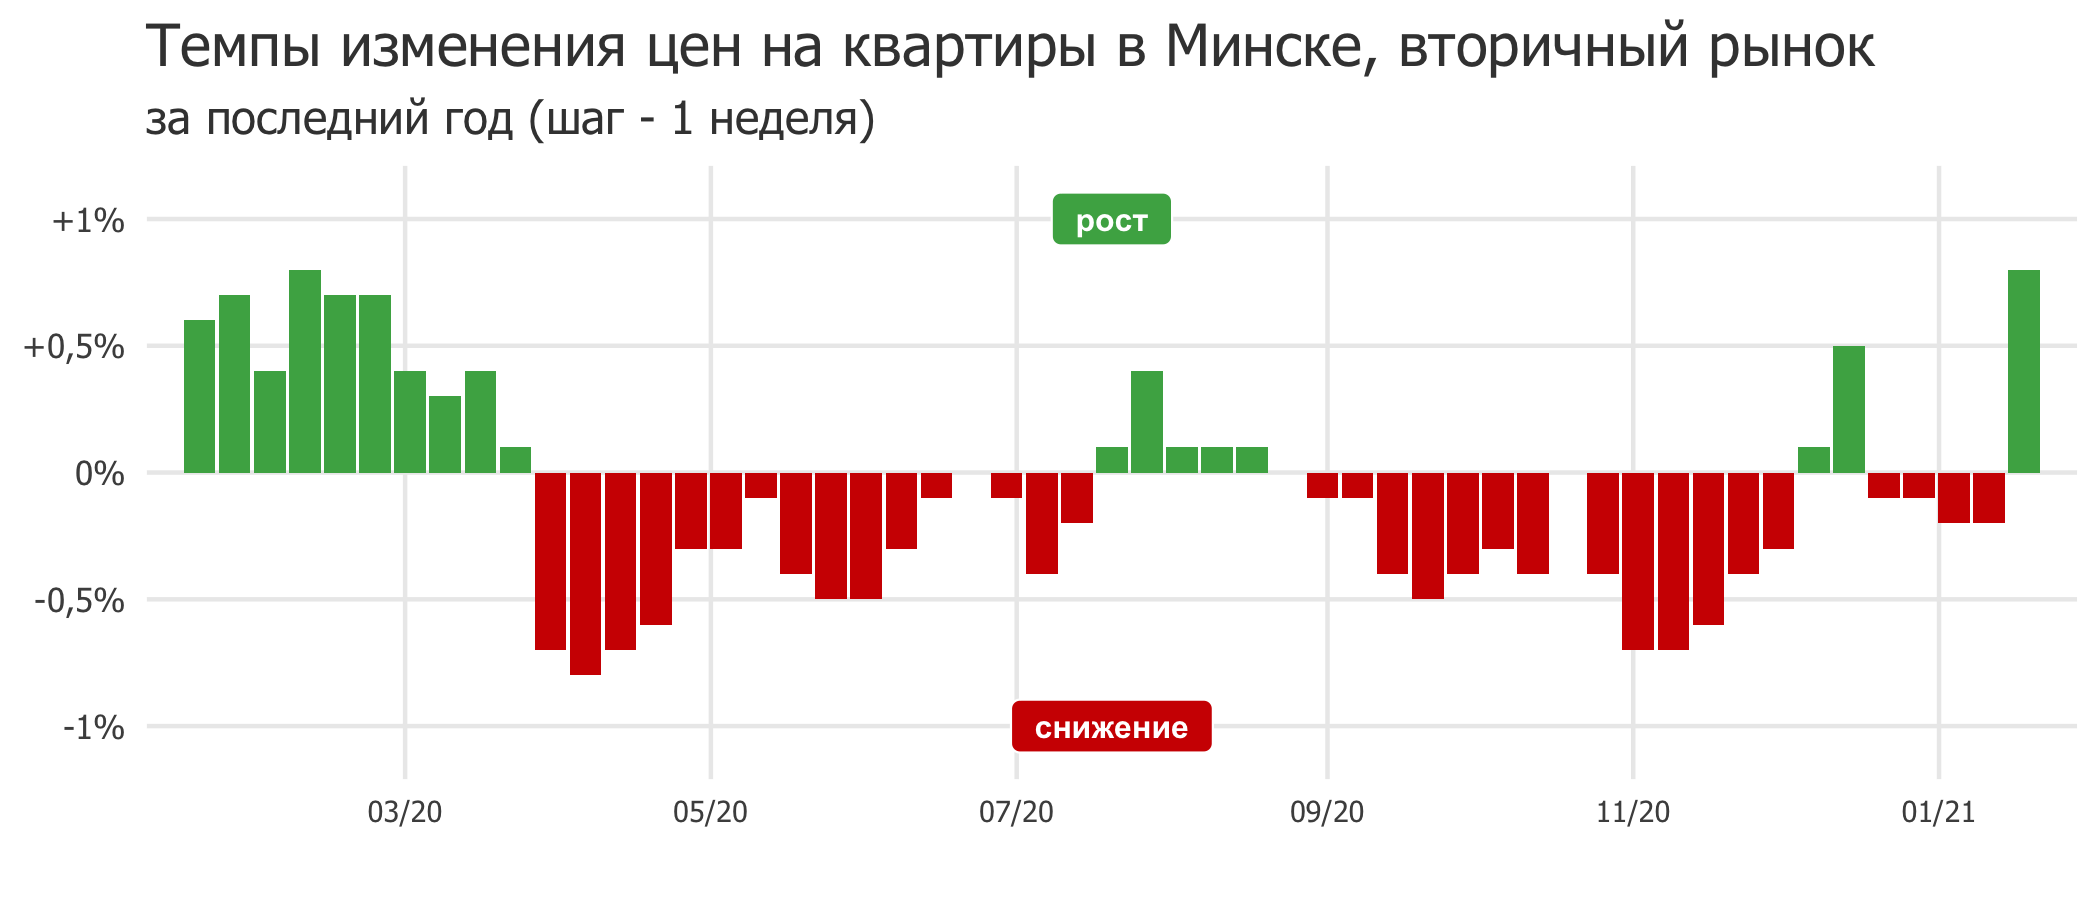 Мониторинг цен предложения квартир в Минске за 11-18 января 2021 года